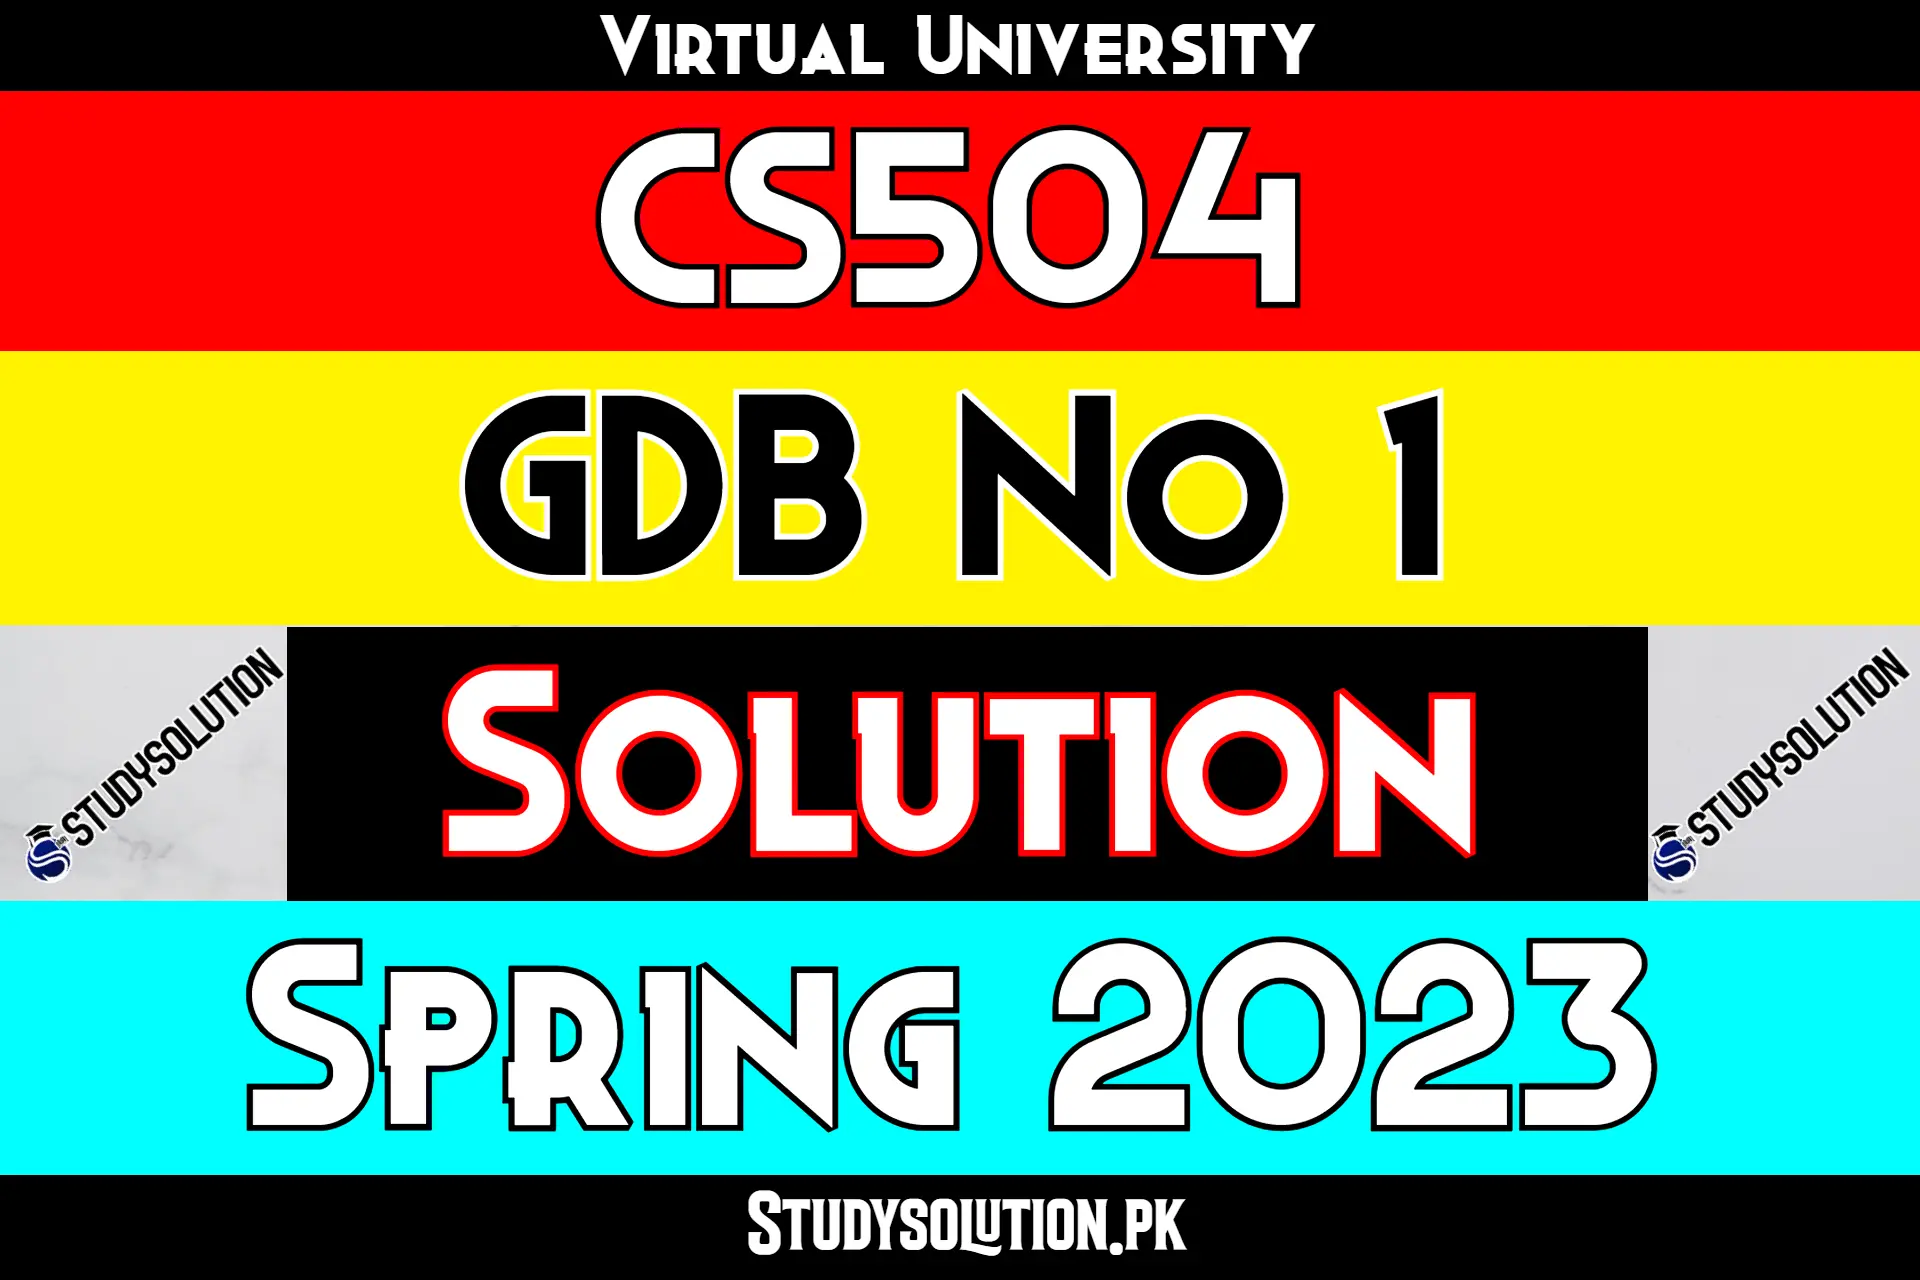 CS504 GDB No 1 Solution Spring 2023